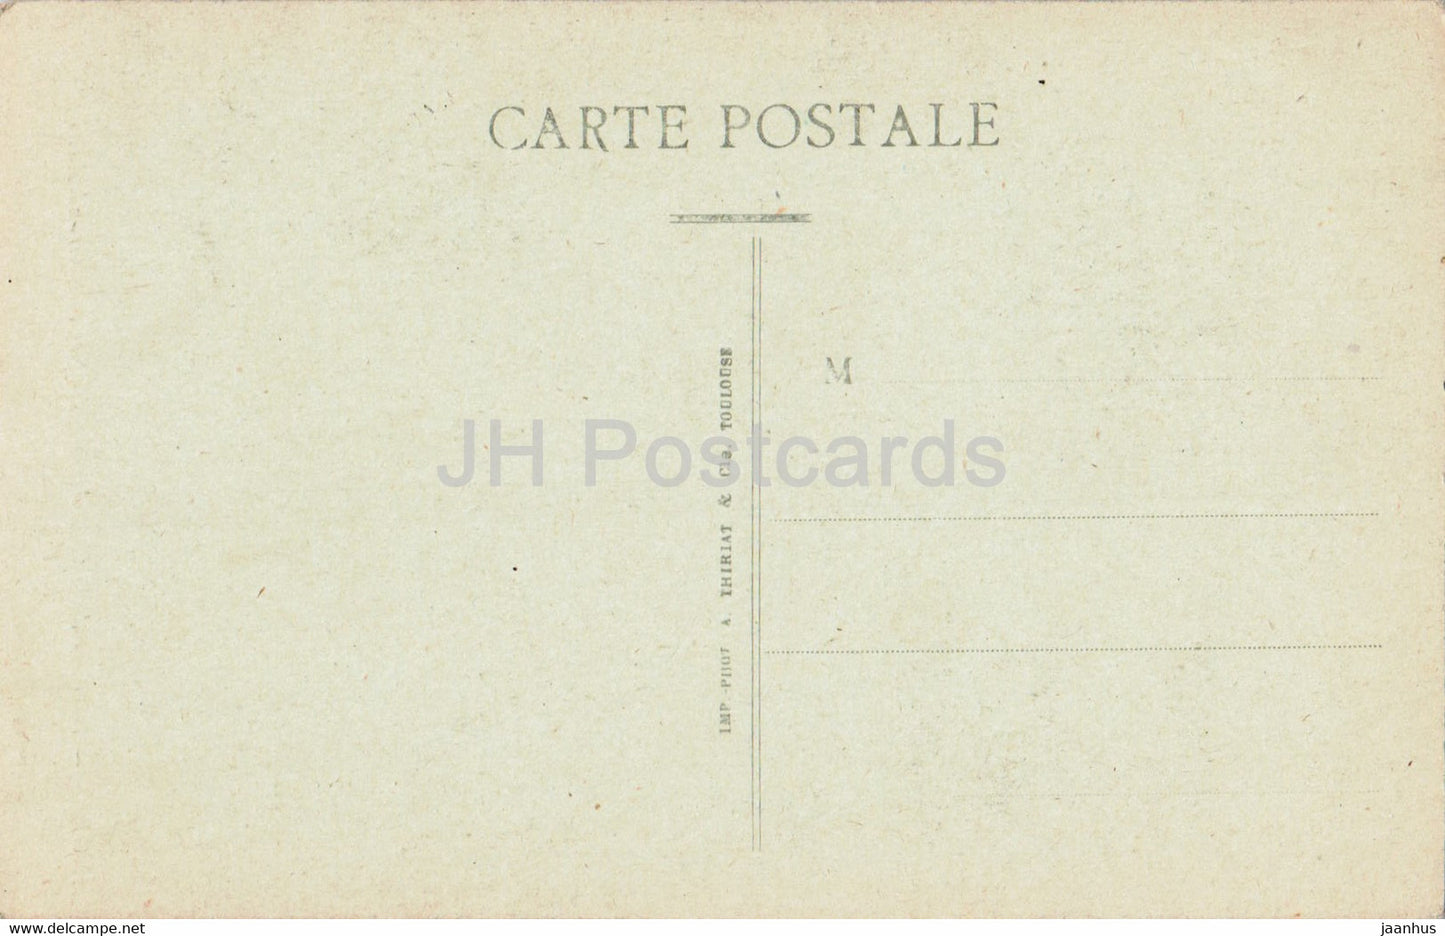 Angers - Interieur de la Cathedrale - La Nef et le Grand Autel - old postcard - France - unused